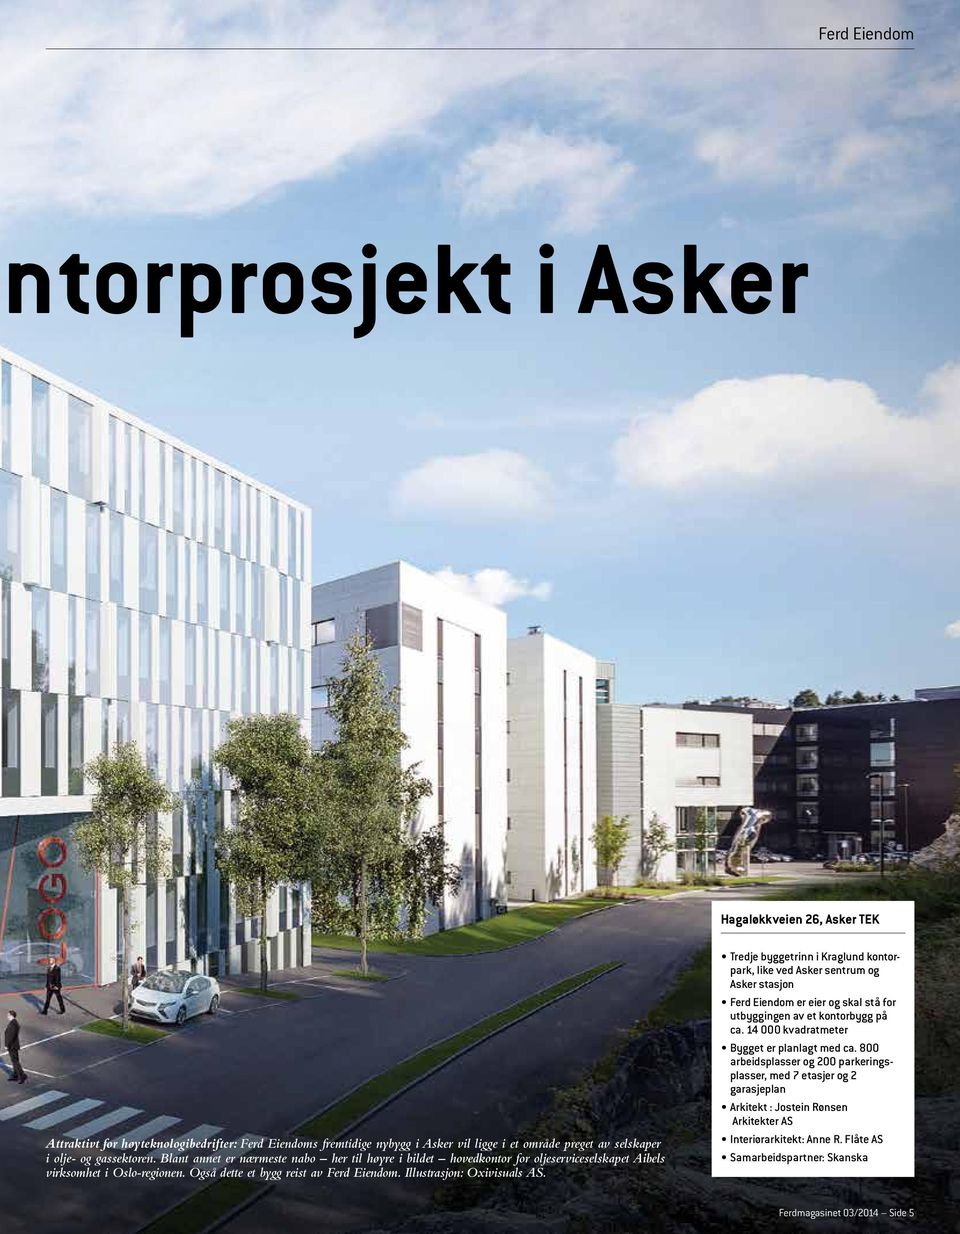 Illustrasjon: Oxivisuals AS. Tredje byggetrinn i Kraglund kontorpark, like ved Asker sentrum og Asker stasjon Ferd Eiendom er eier og skal stå for utbyggingen av et kontorbygg på ca.